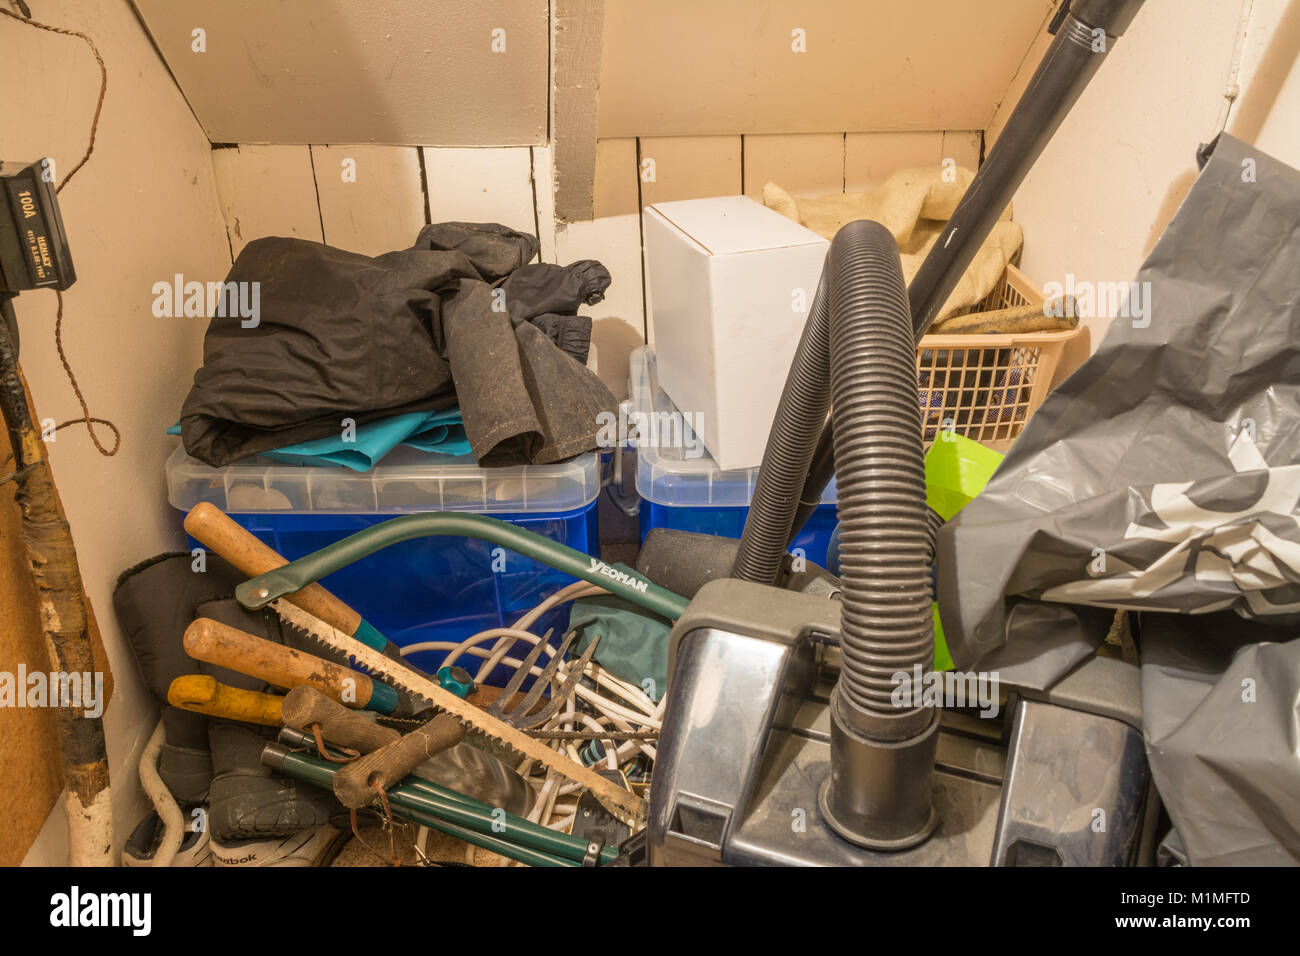 Sous les escaliers placard plein d'objets quotidiens, y compris des outils, aspirateur, boîtes de rangement et l'encombrement Banque D'Images